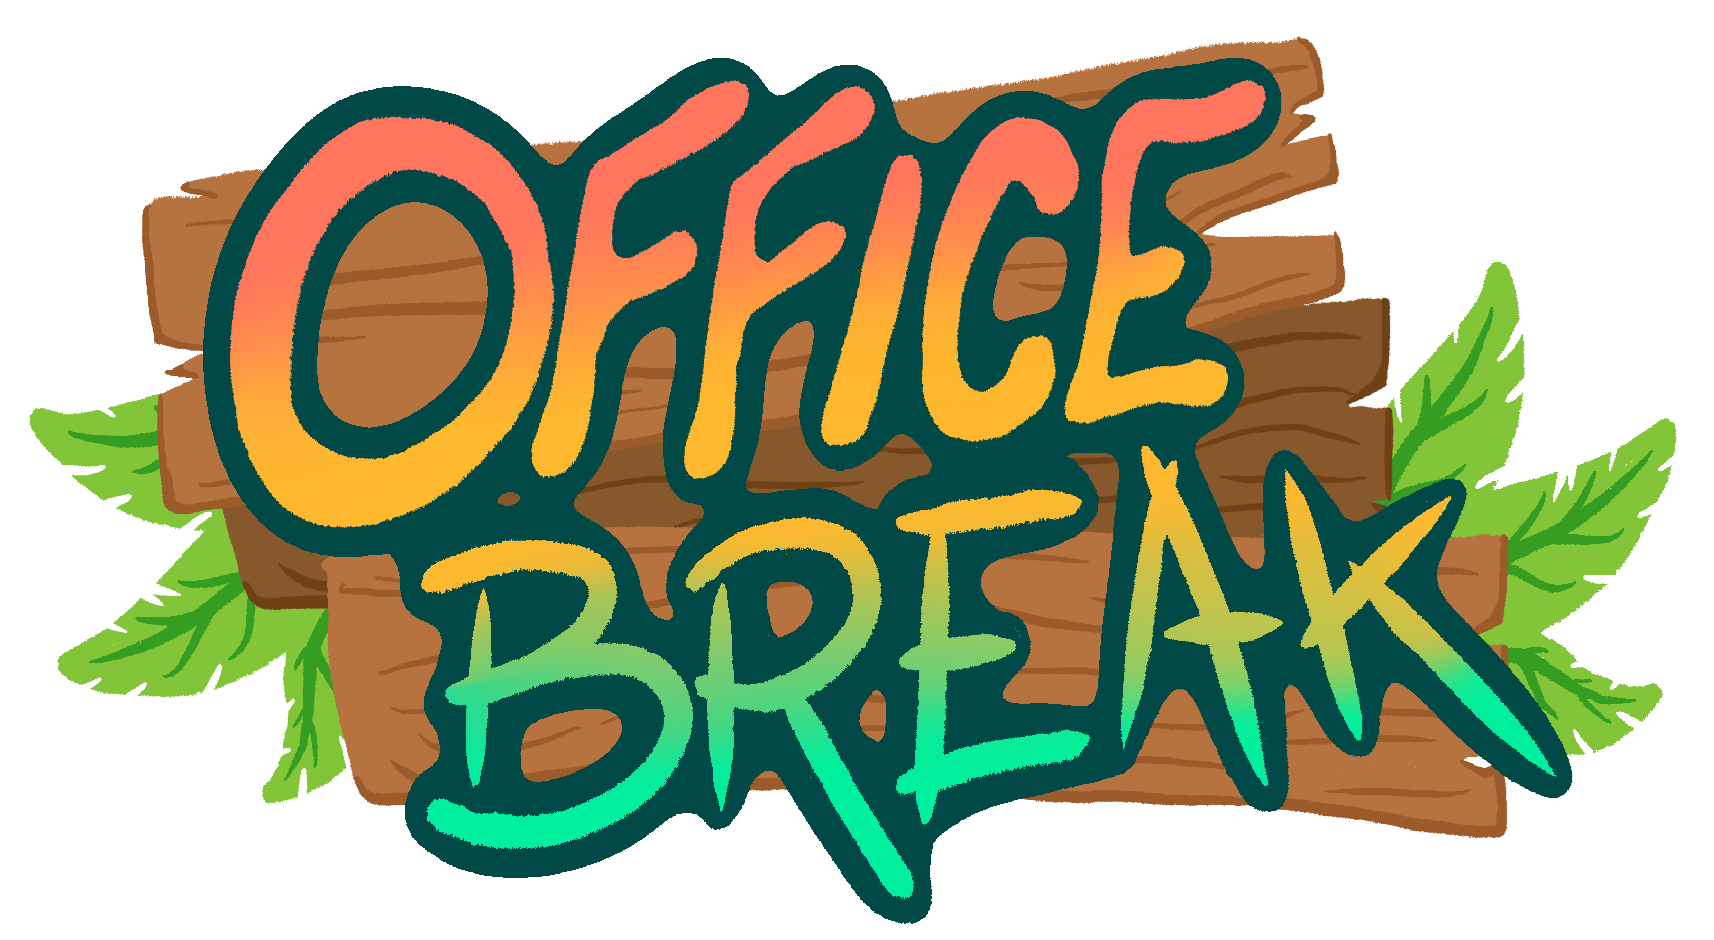 Office break